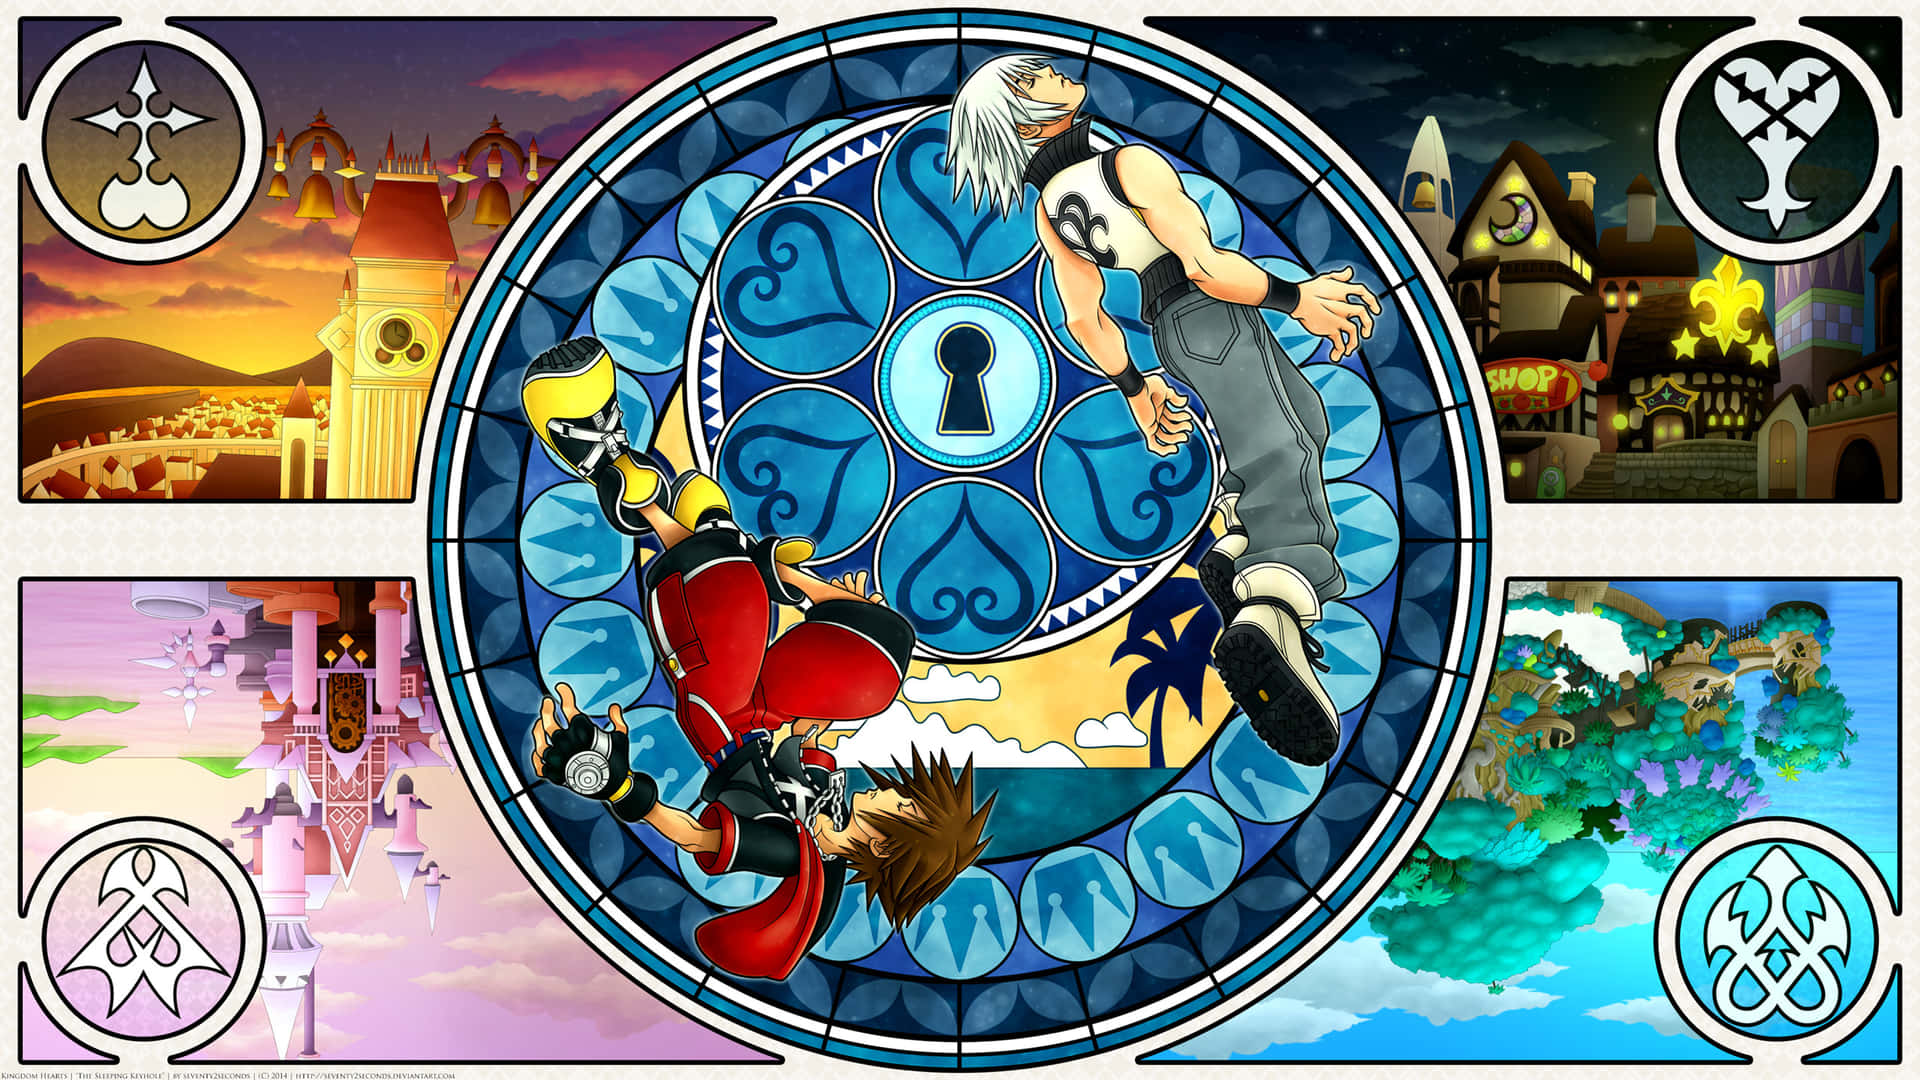 Rikude Kingdom Hearts Adopta Una Pose Poderosa En Una Escena De Acción Intensa. Fondo de pantalla